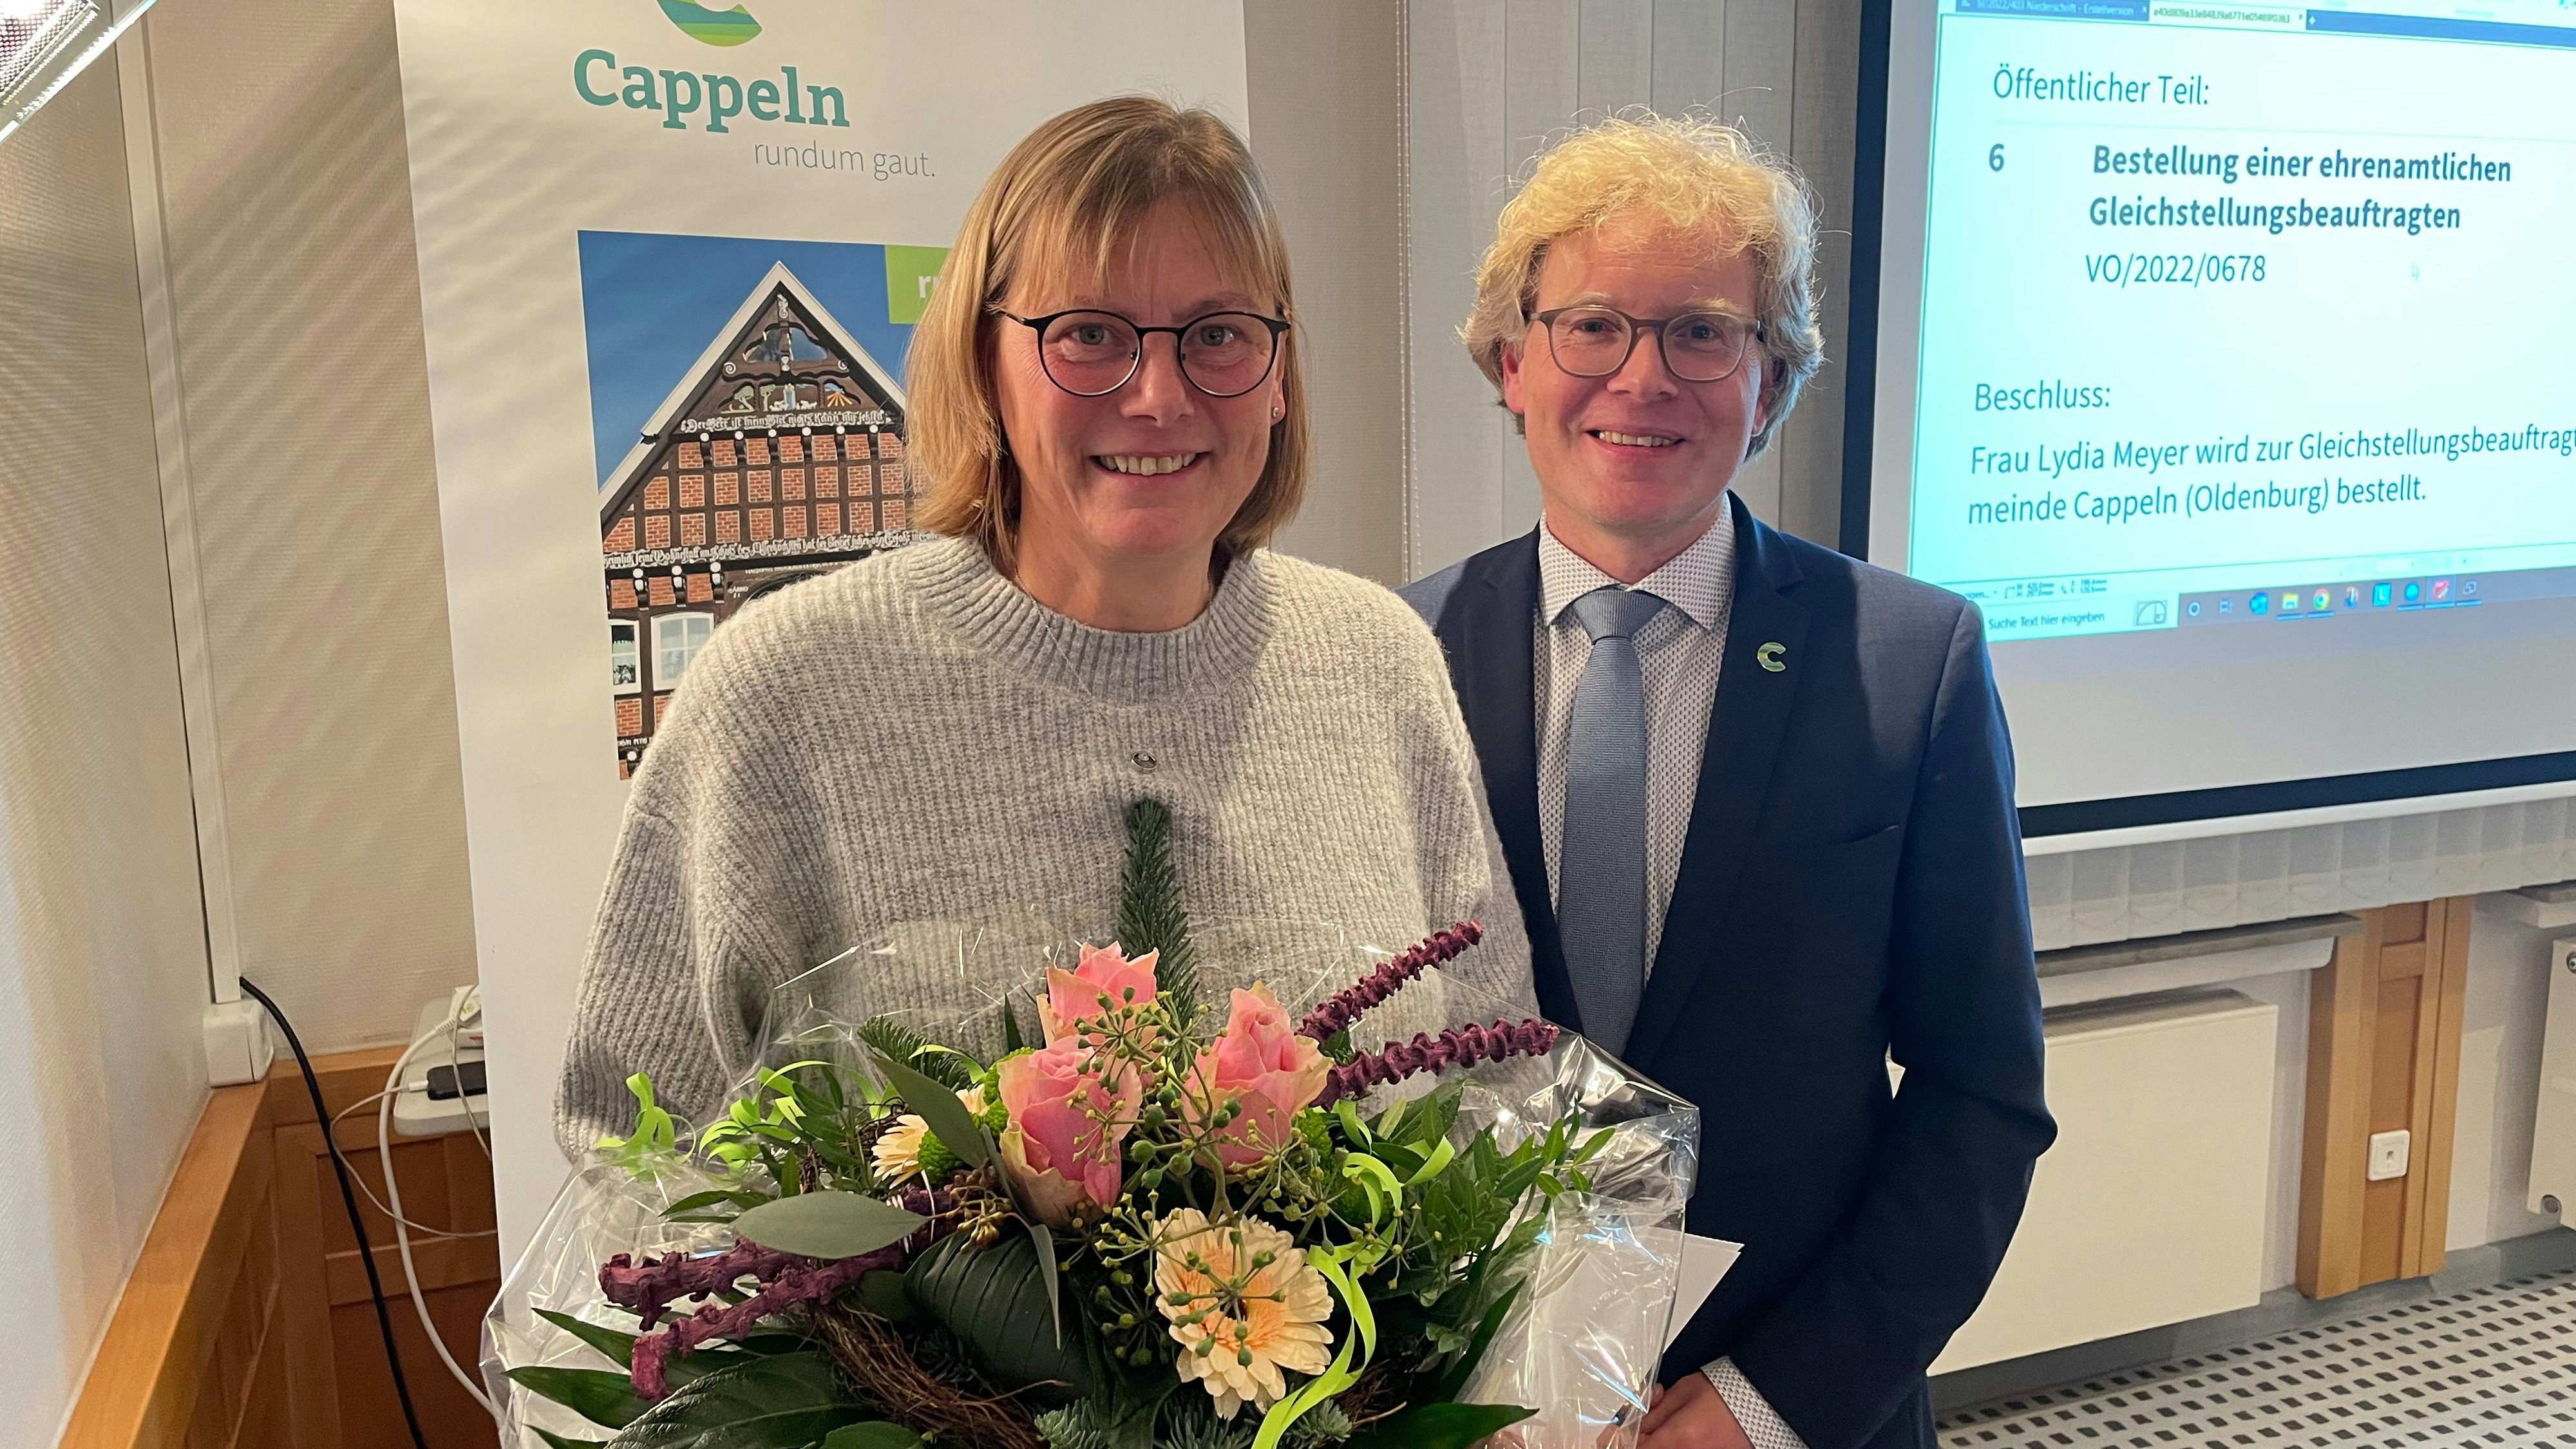 Mit Blumen begrüßt: Lydia Meyer ist die neue Gleichstellungsbeauftragte der Gemeinde Cappeln. Bürgermeister Marcus Brinkmann gehörte zu den ersten Gratulanten. Foto: Vorwerk